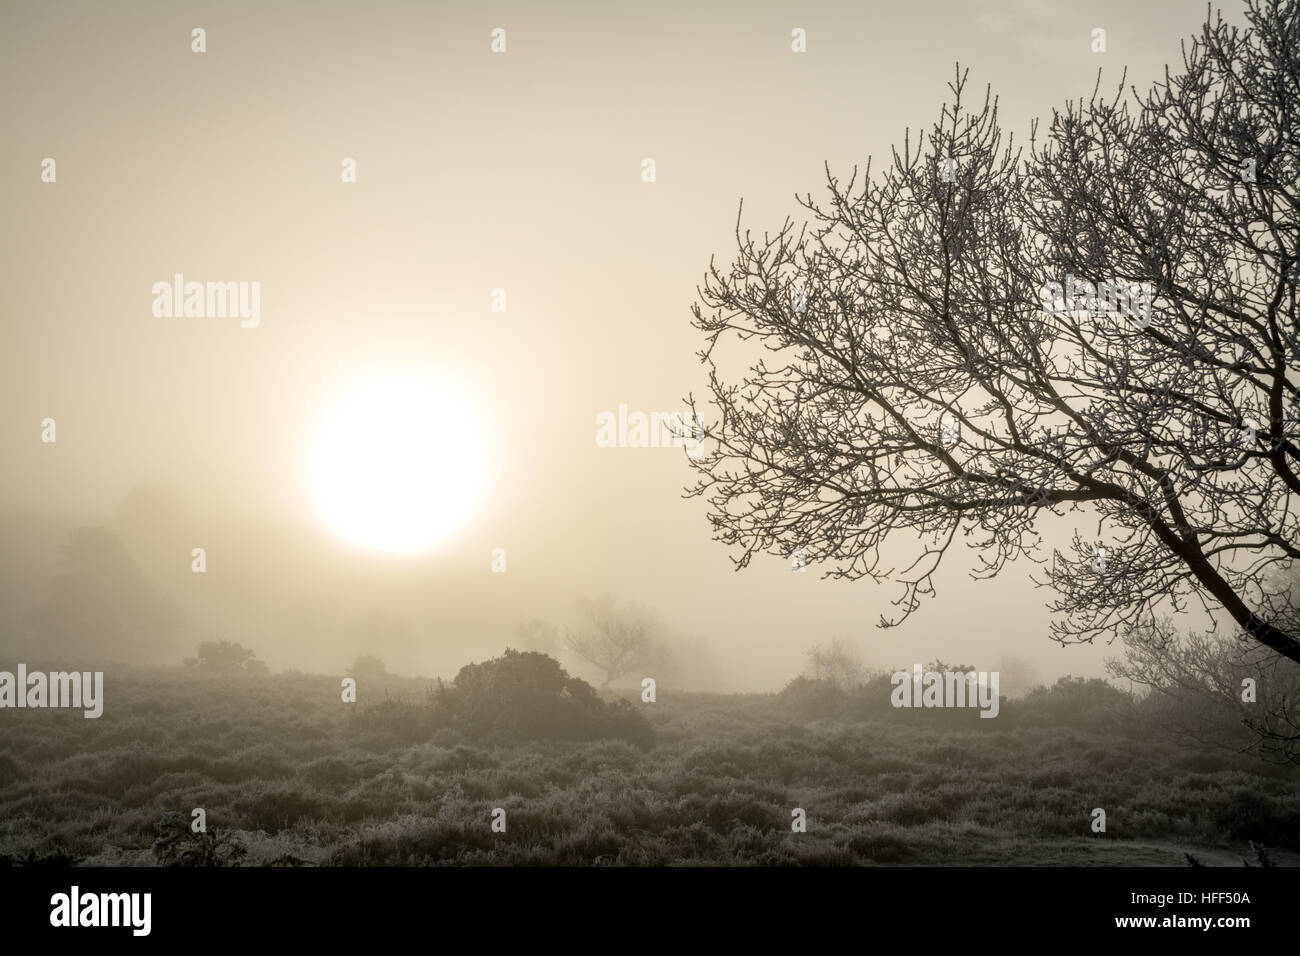 Paesaggio invernale di brughiera e alberi in nebbia gelida. Frensham comune nella zona di Surrey Hills di eccezionale bellezza naturale, Regno Unito. Foto Stock